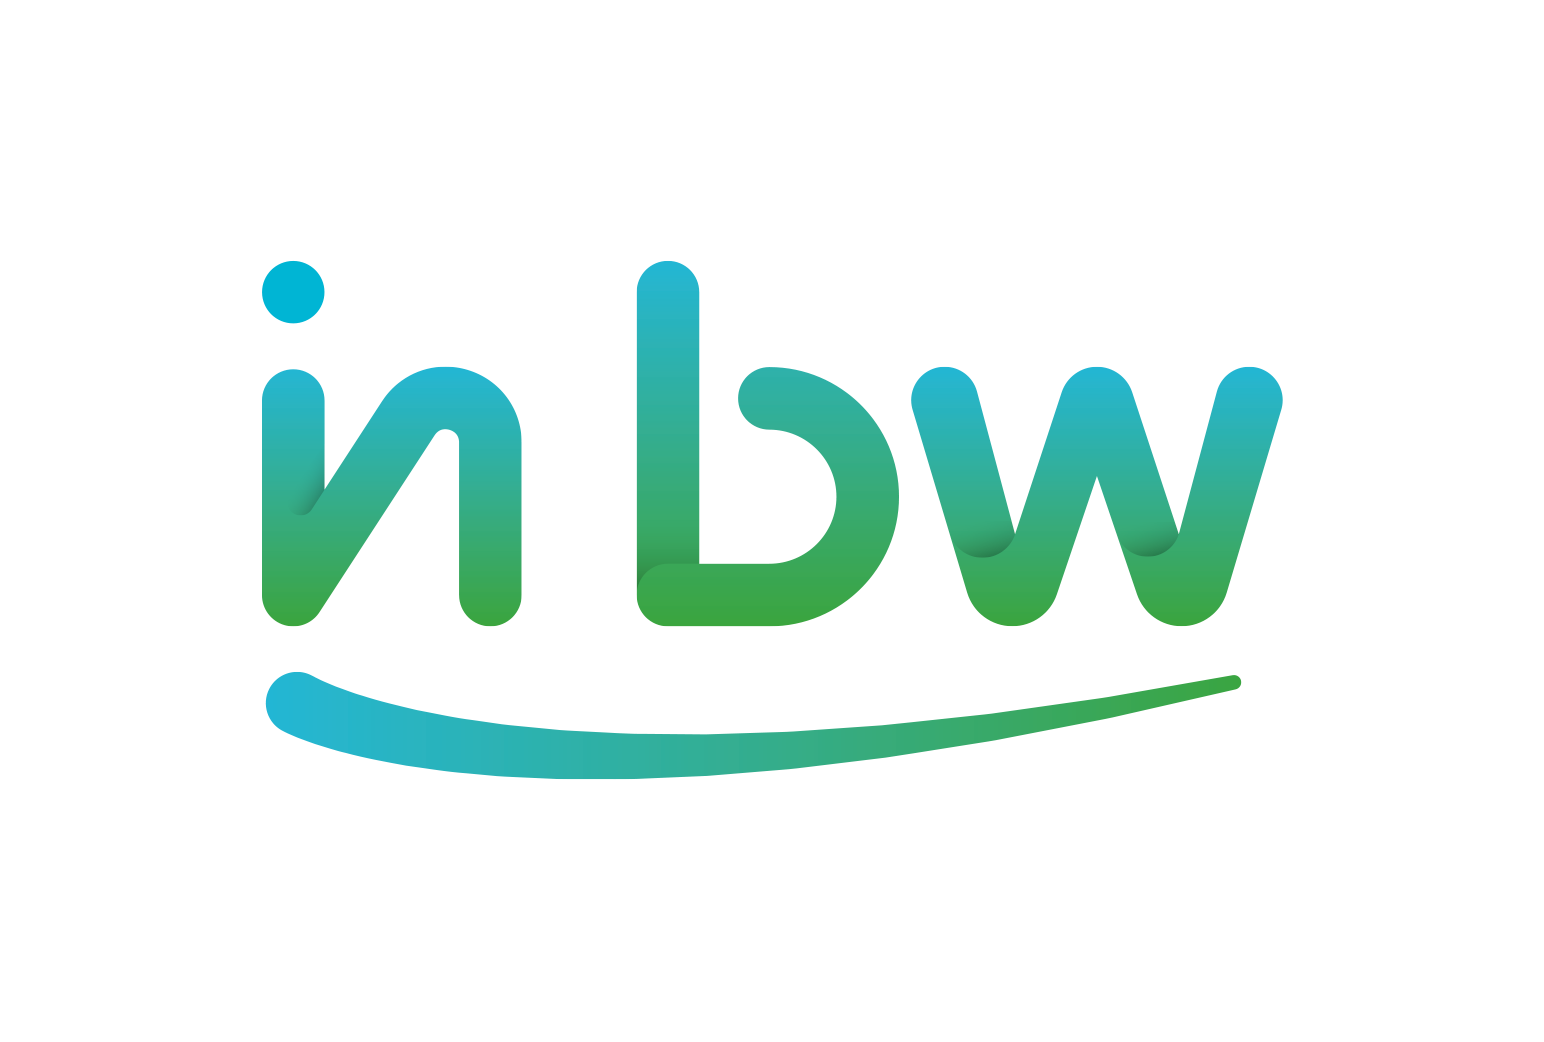 inBW_Logo_RVB.png (58 KB)